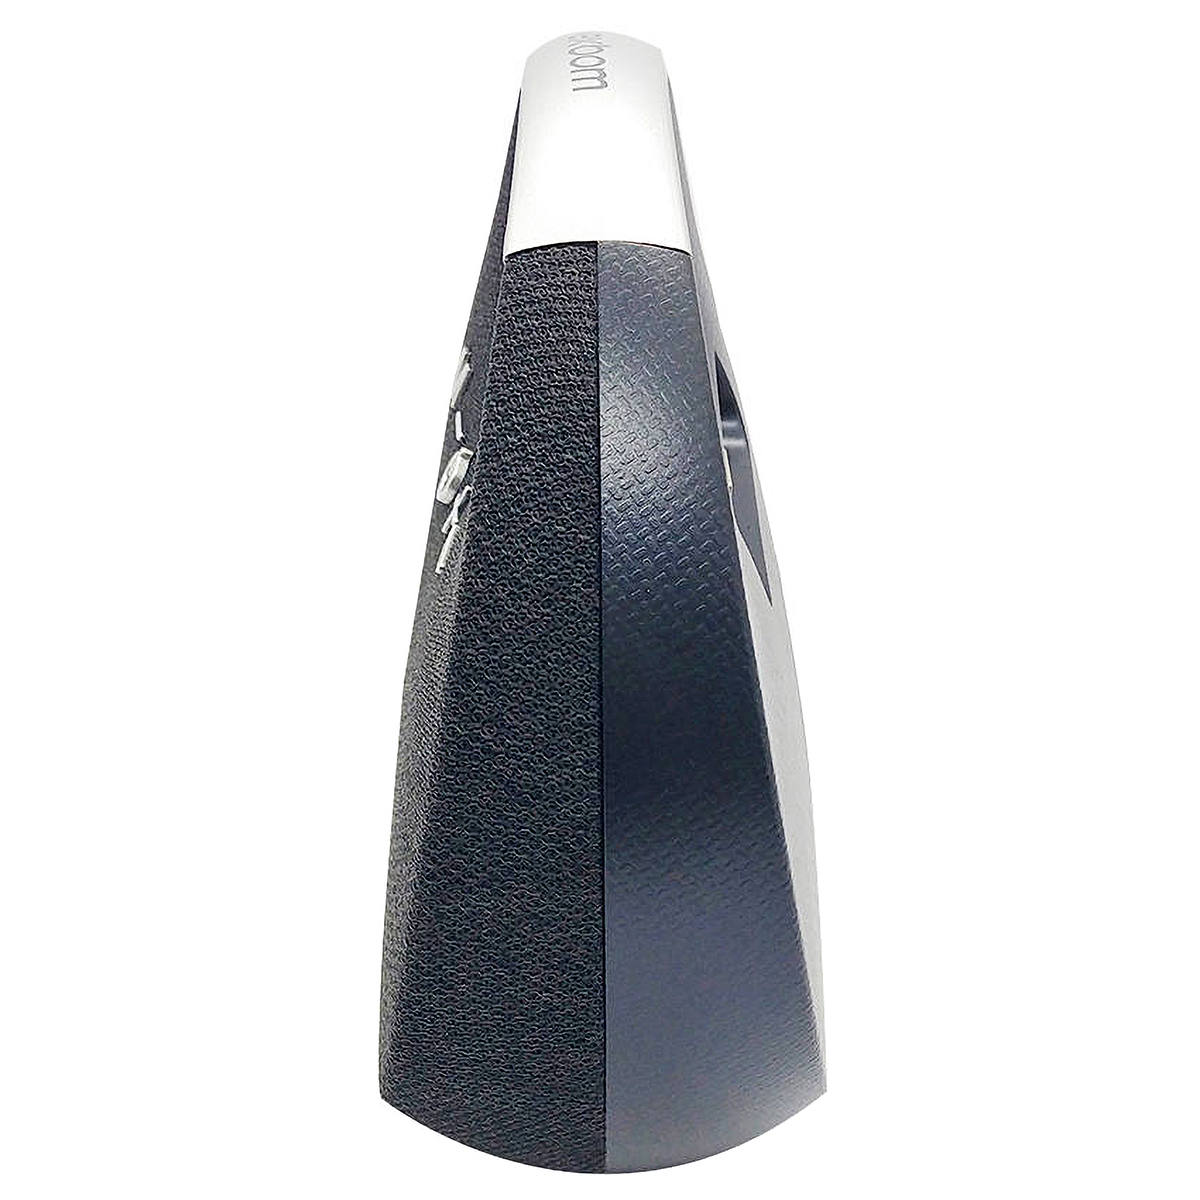 Caixa de Som Studio Speaker Bluetooth com Funções TWS USB Auxiliar SD FM Microfone com Alça Exbom CS-M90BT Preta